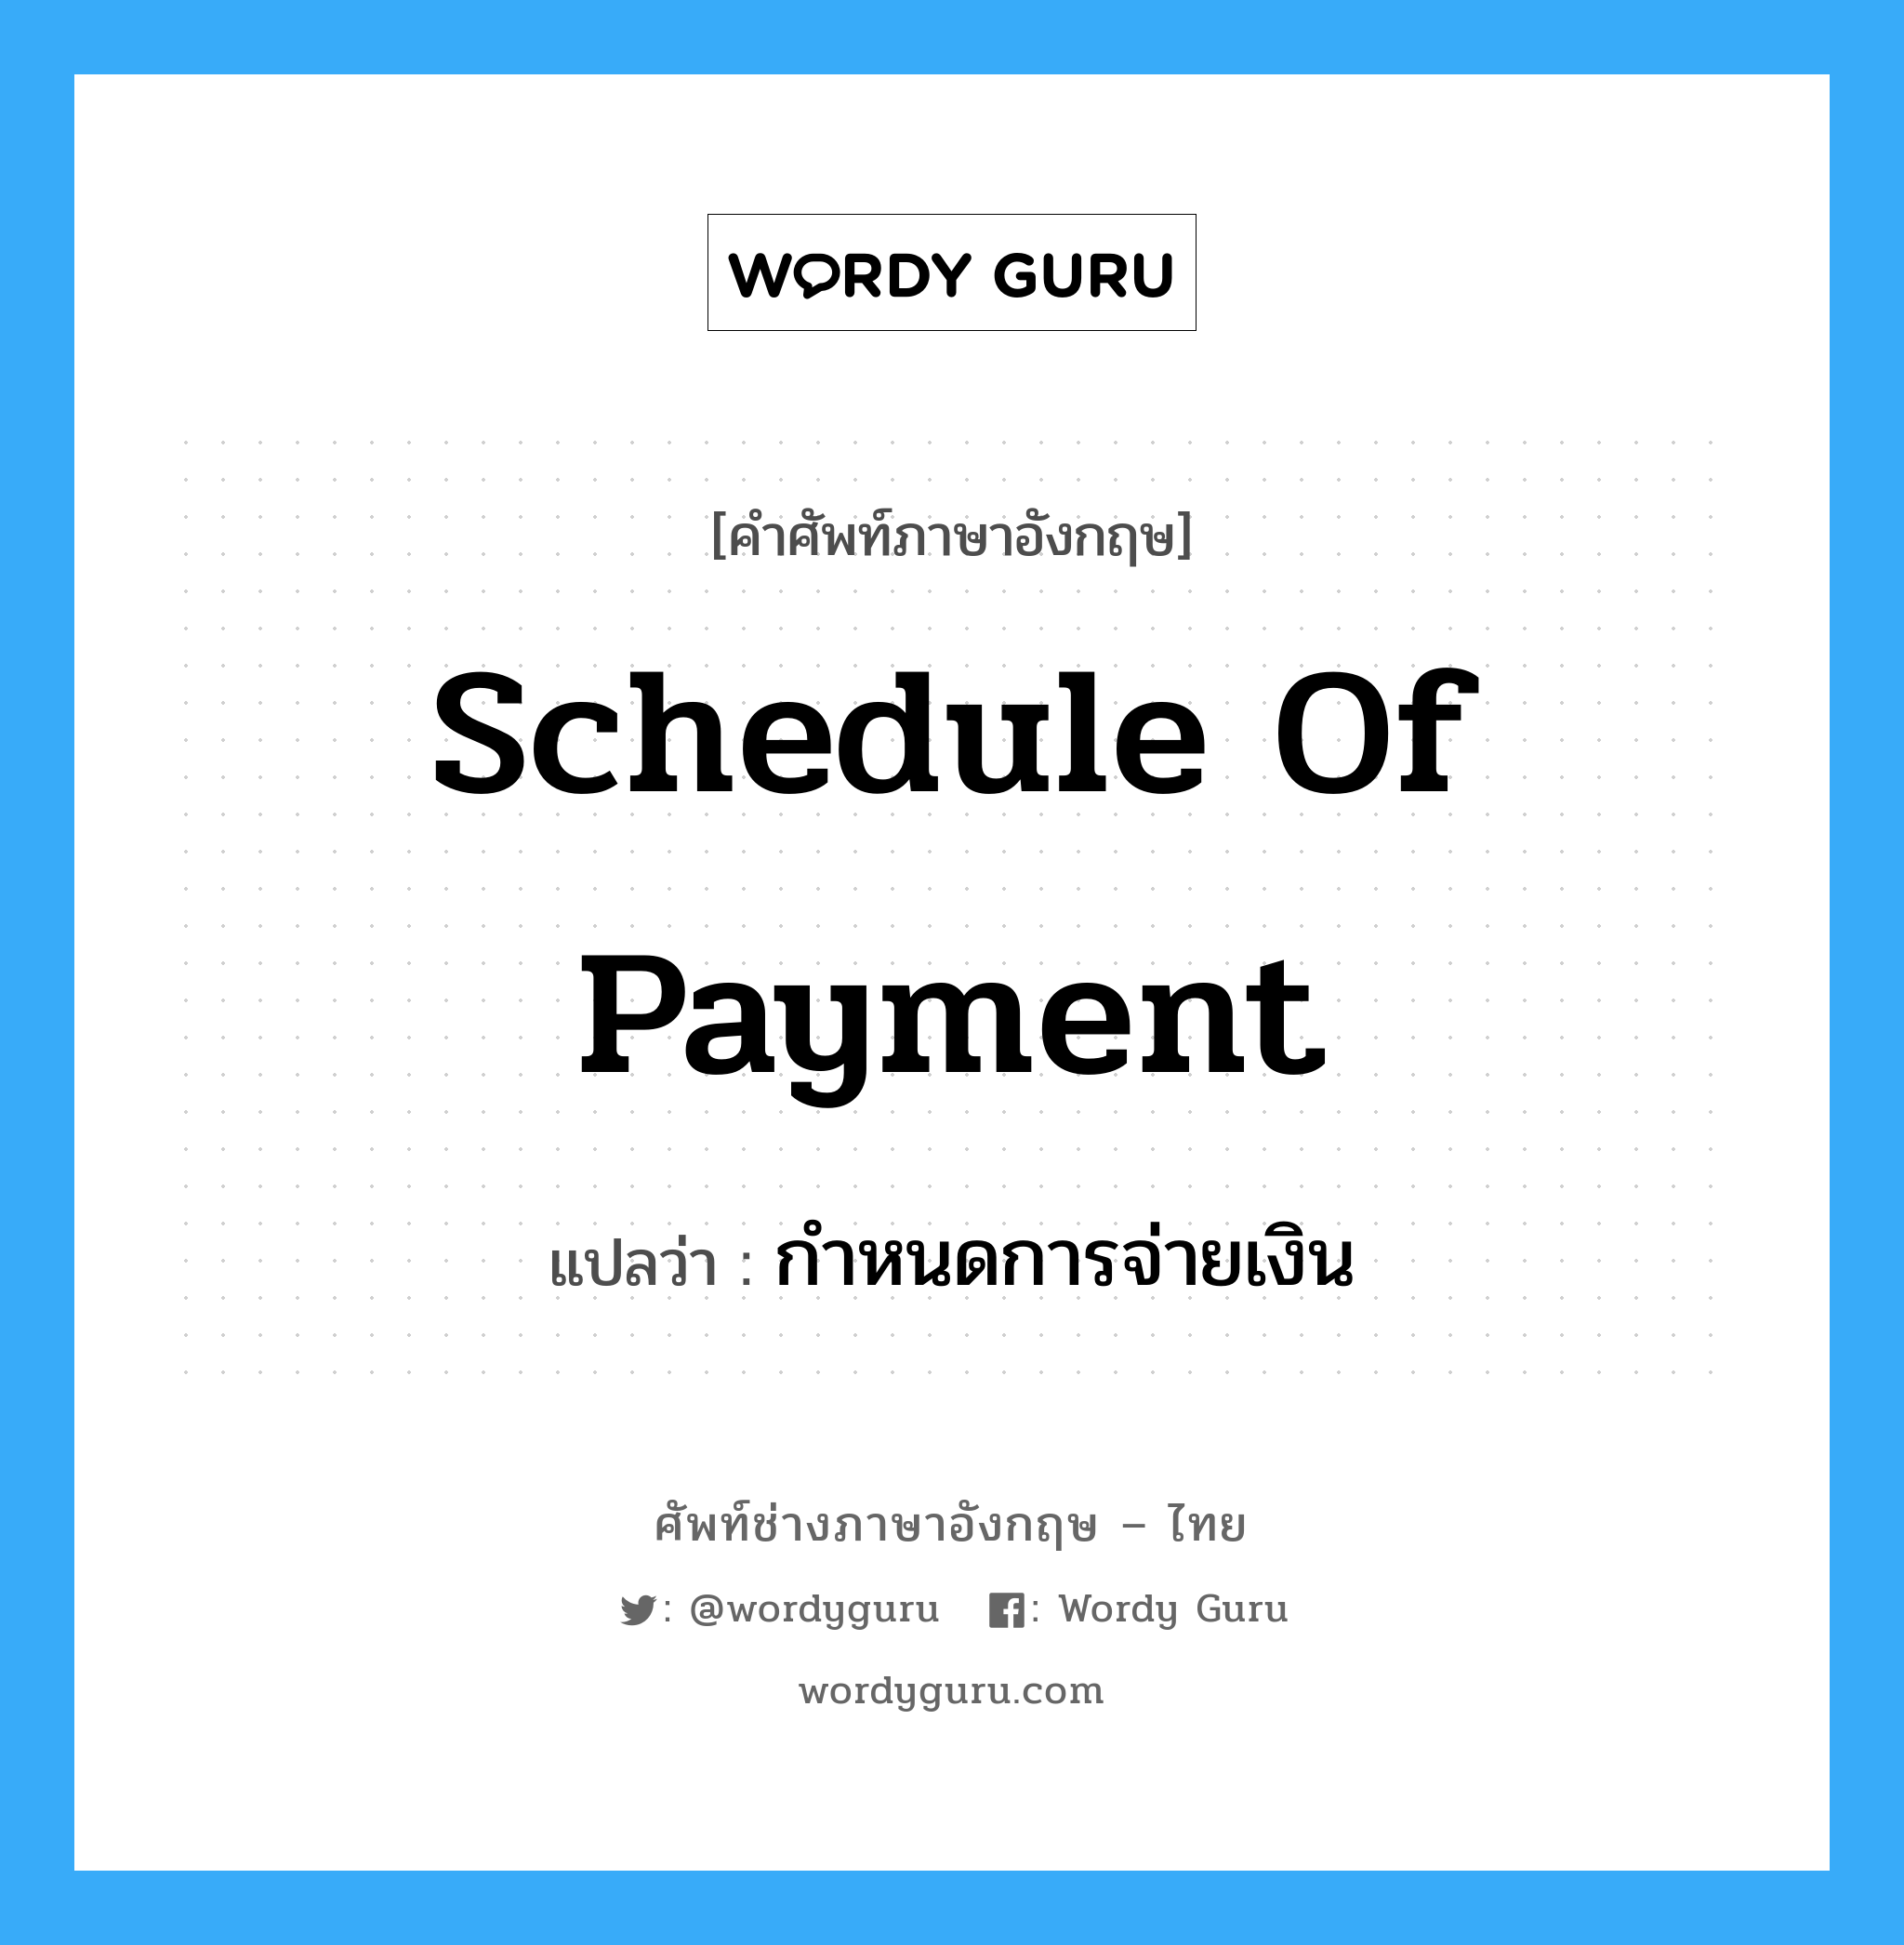 Schedule of Payment แปลว่า?, คำศัพท์ช่างภาษาอังกฤษ - ไทย Schedule of Payment คำศัพท์ภาษาอังกฤษ Schedule of Payment แปลว่า กำหนดการจ่ายเงิน